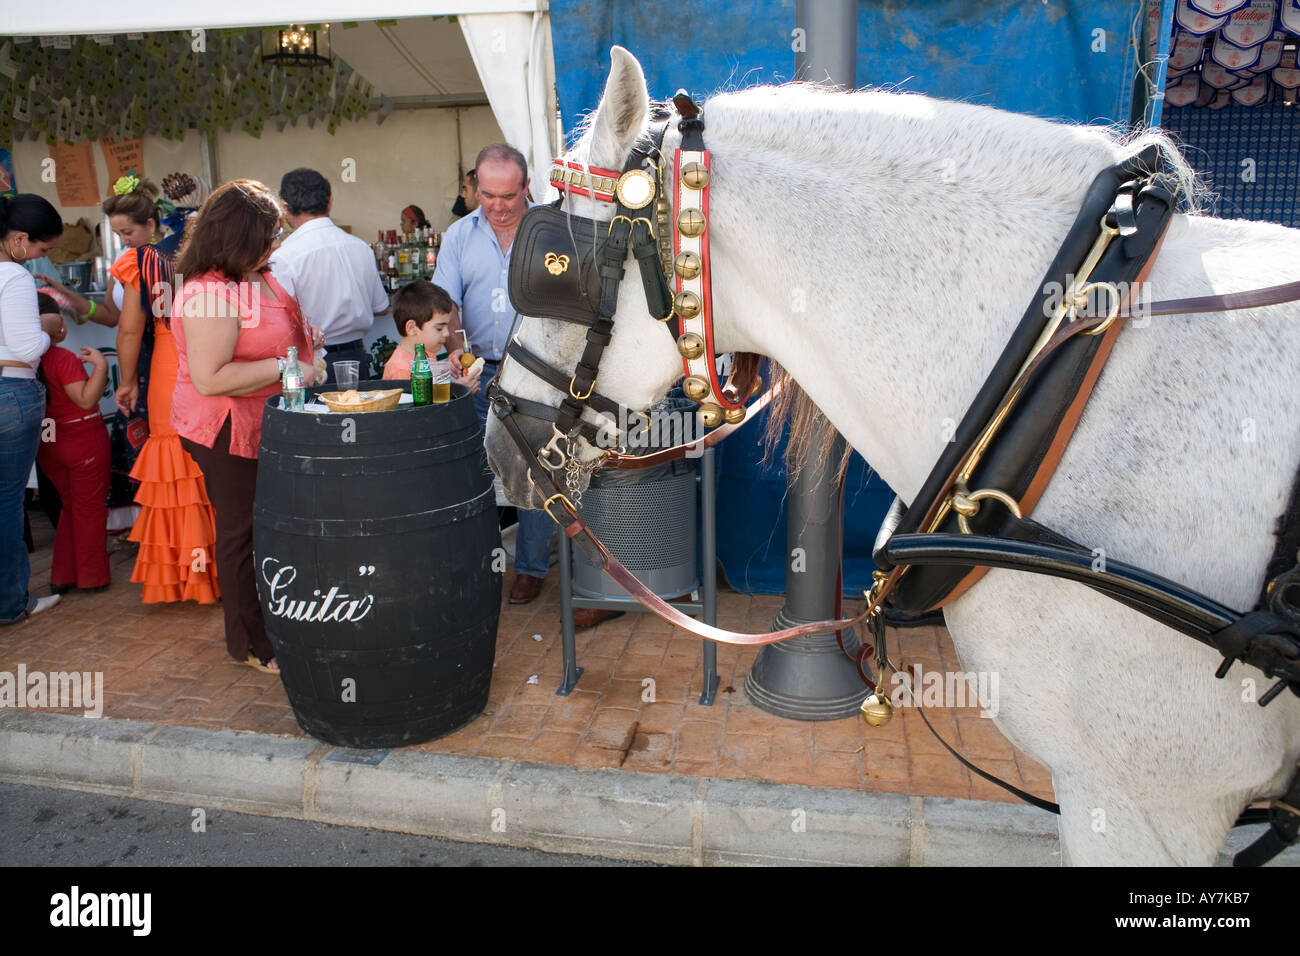 Cavallo nel cablaggio e persone mangiare a Fuengirola Feria - Spagna - Foto Stock